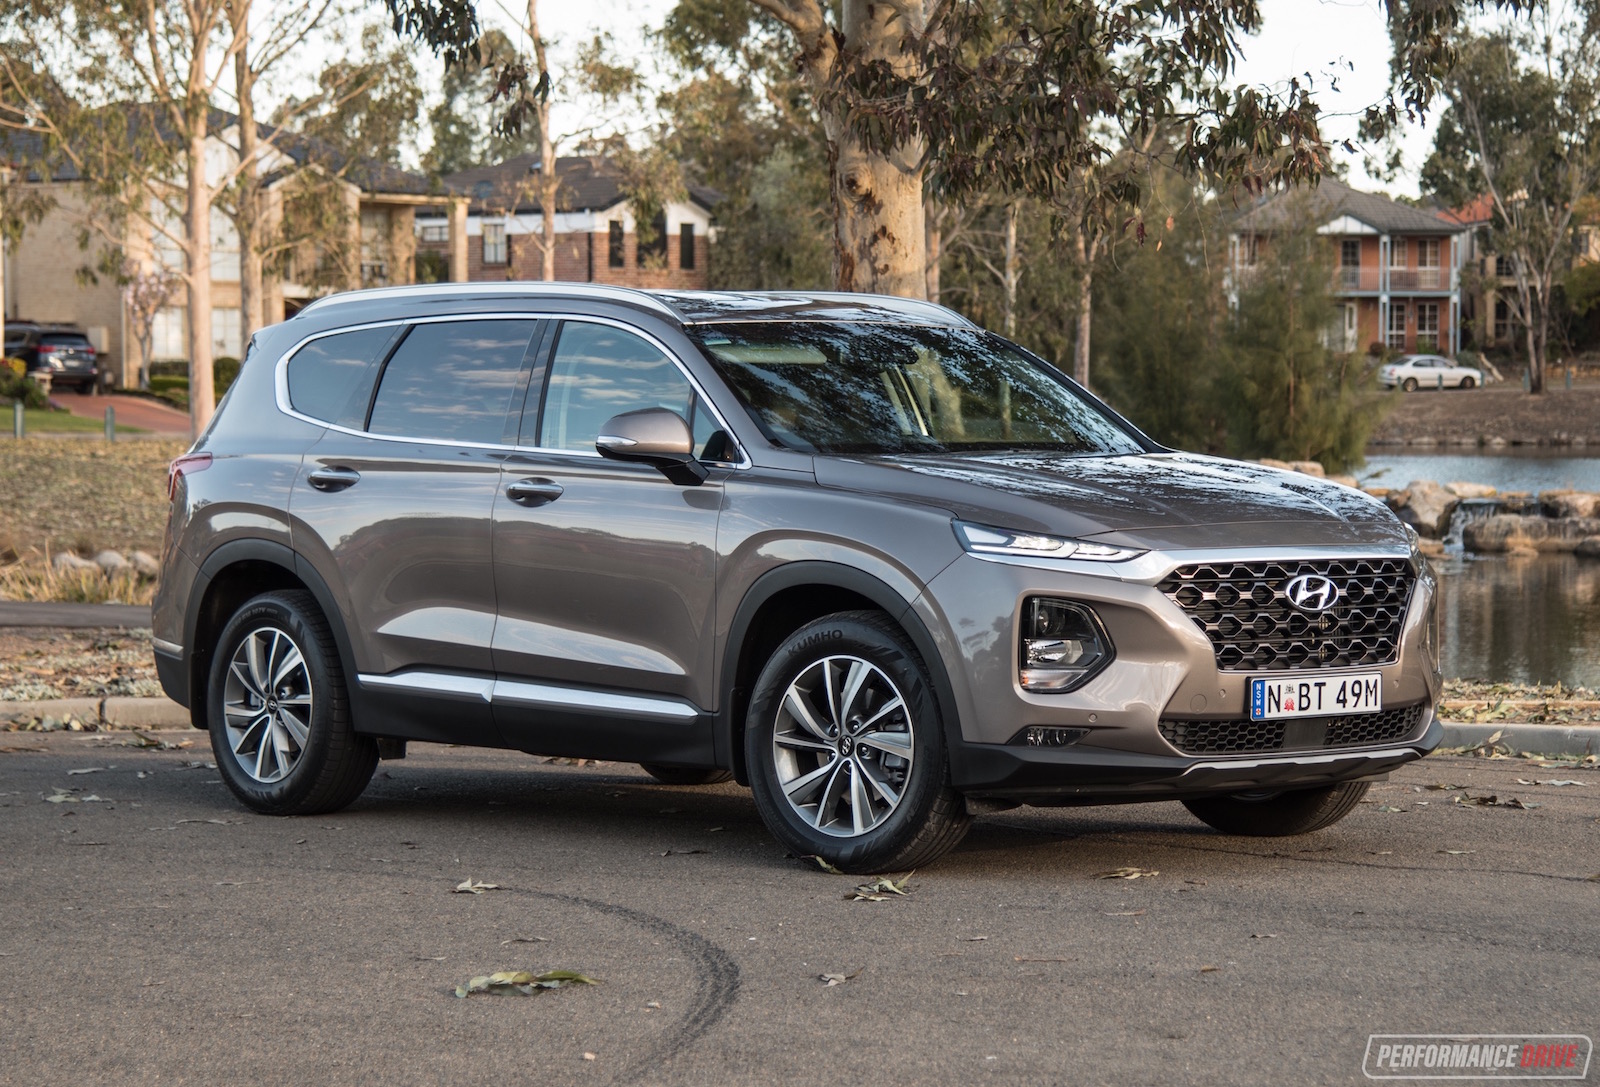 2019 Hyundai Santa Fe Elite review (video)